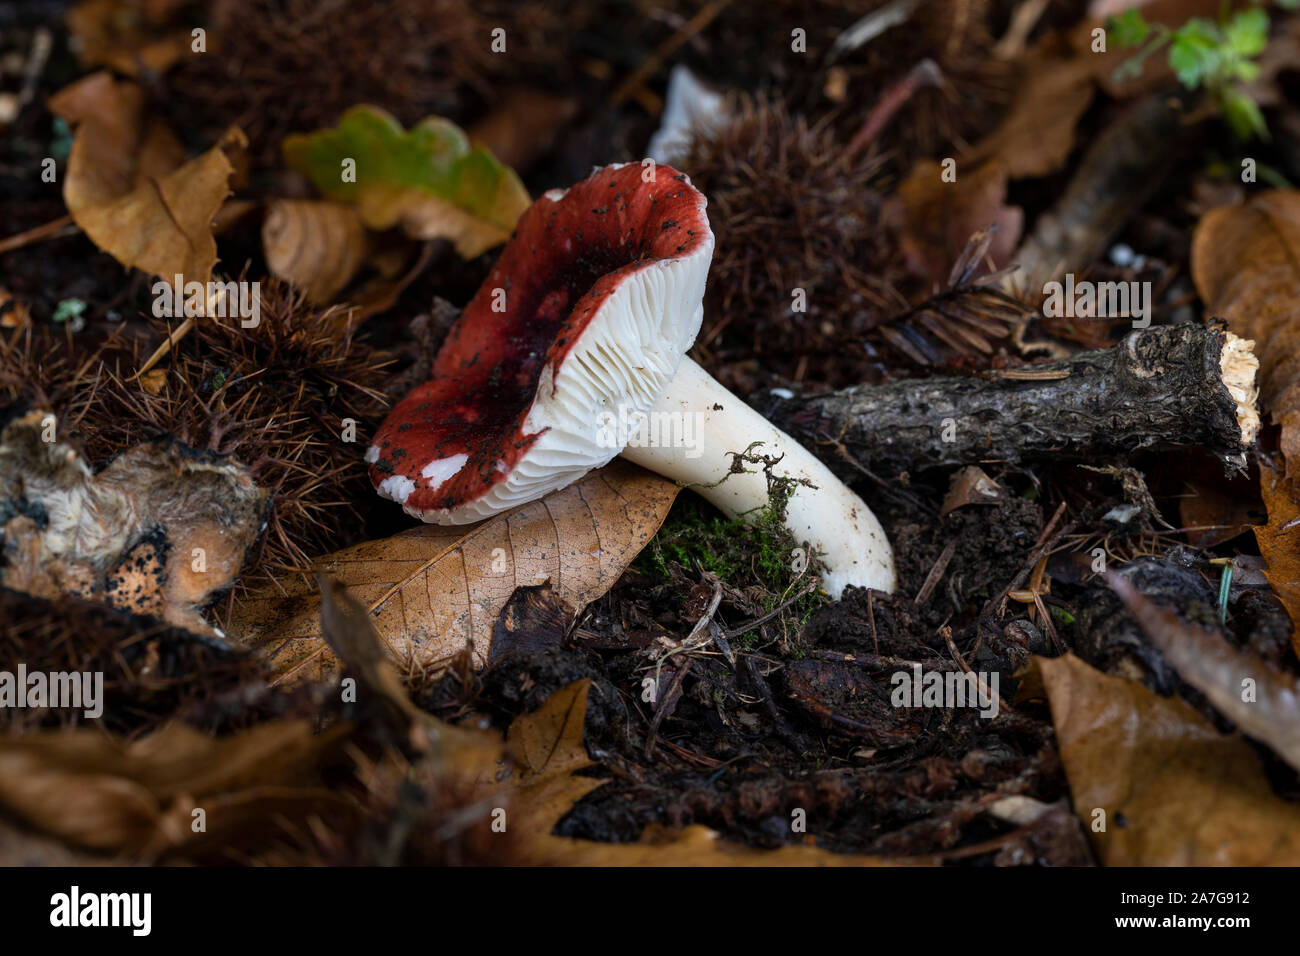 Gros plan sur un champignon russula pourpre sauvage et noir sur le sol de la forêt montrant ses branchies blanches.Automne, Angleterre, Royaume-Uni Banque D'Images